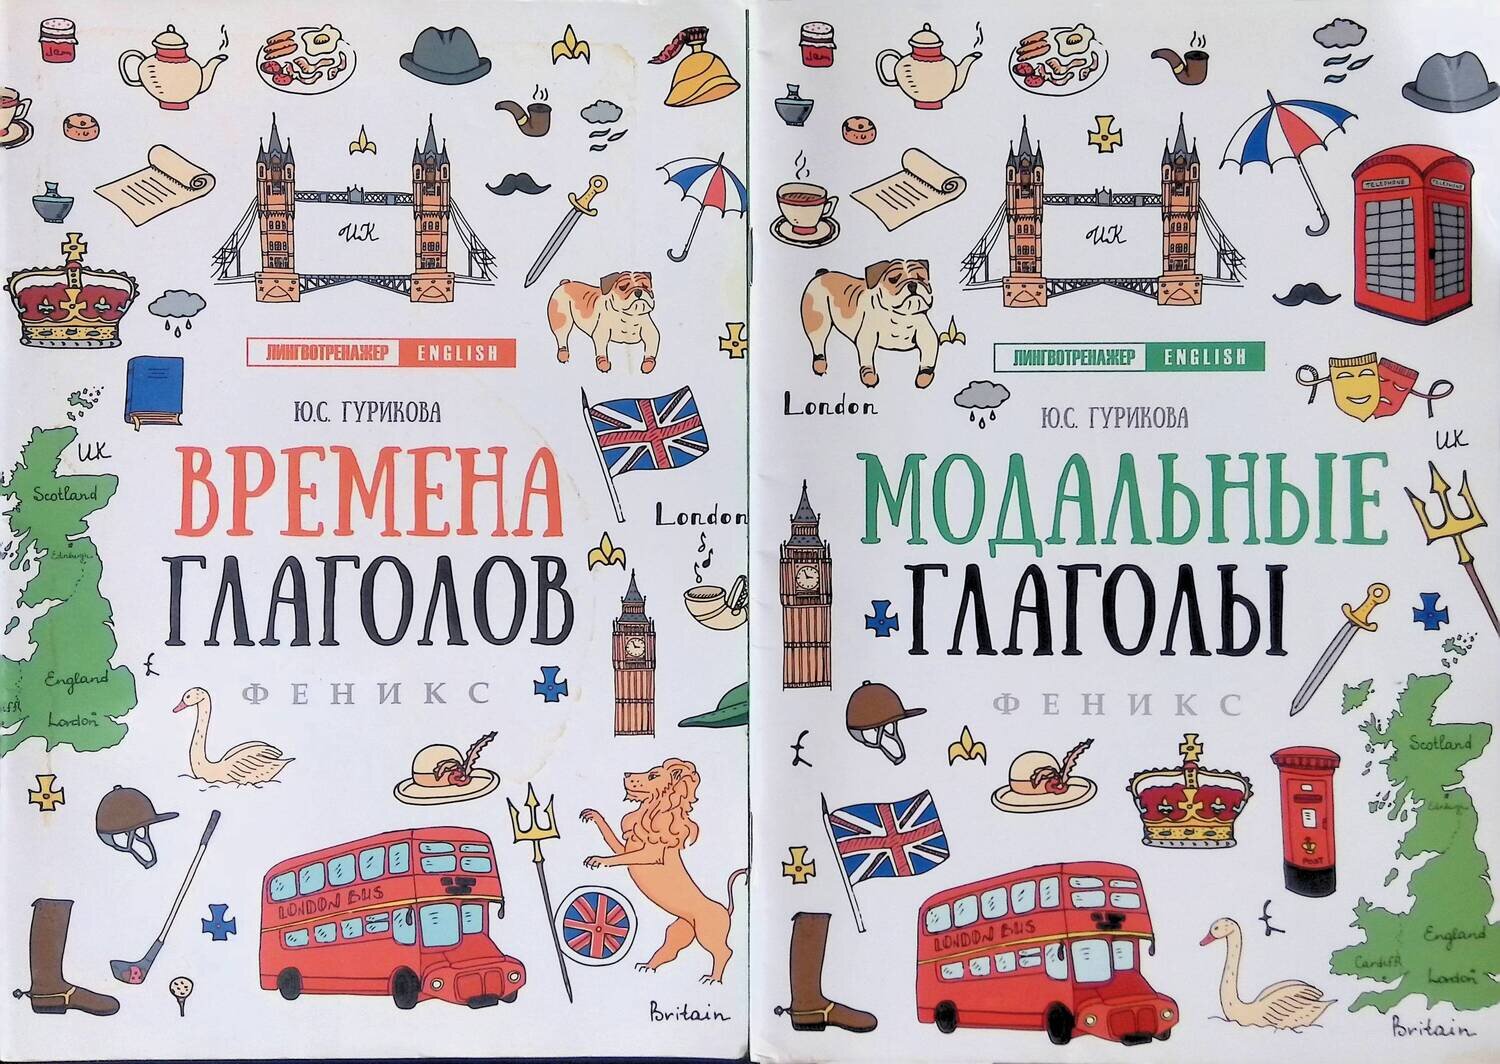 Времена глаголов; Модальные глаголы (комплект из 2 книг); Гурикова Юлия Сергеевна